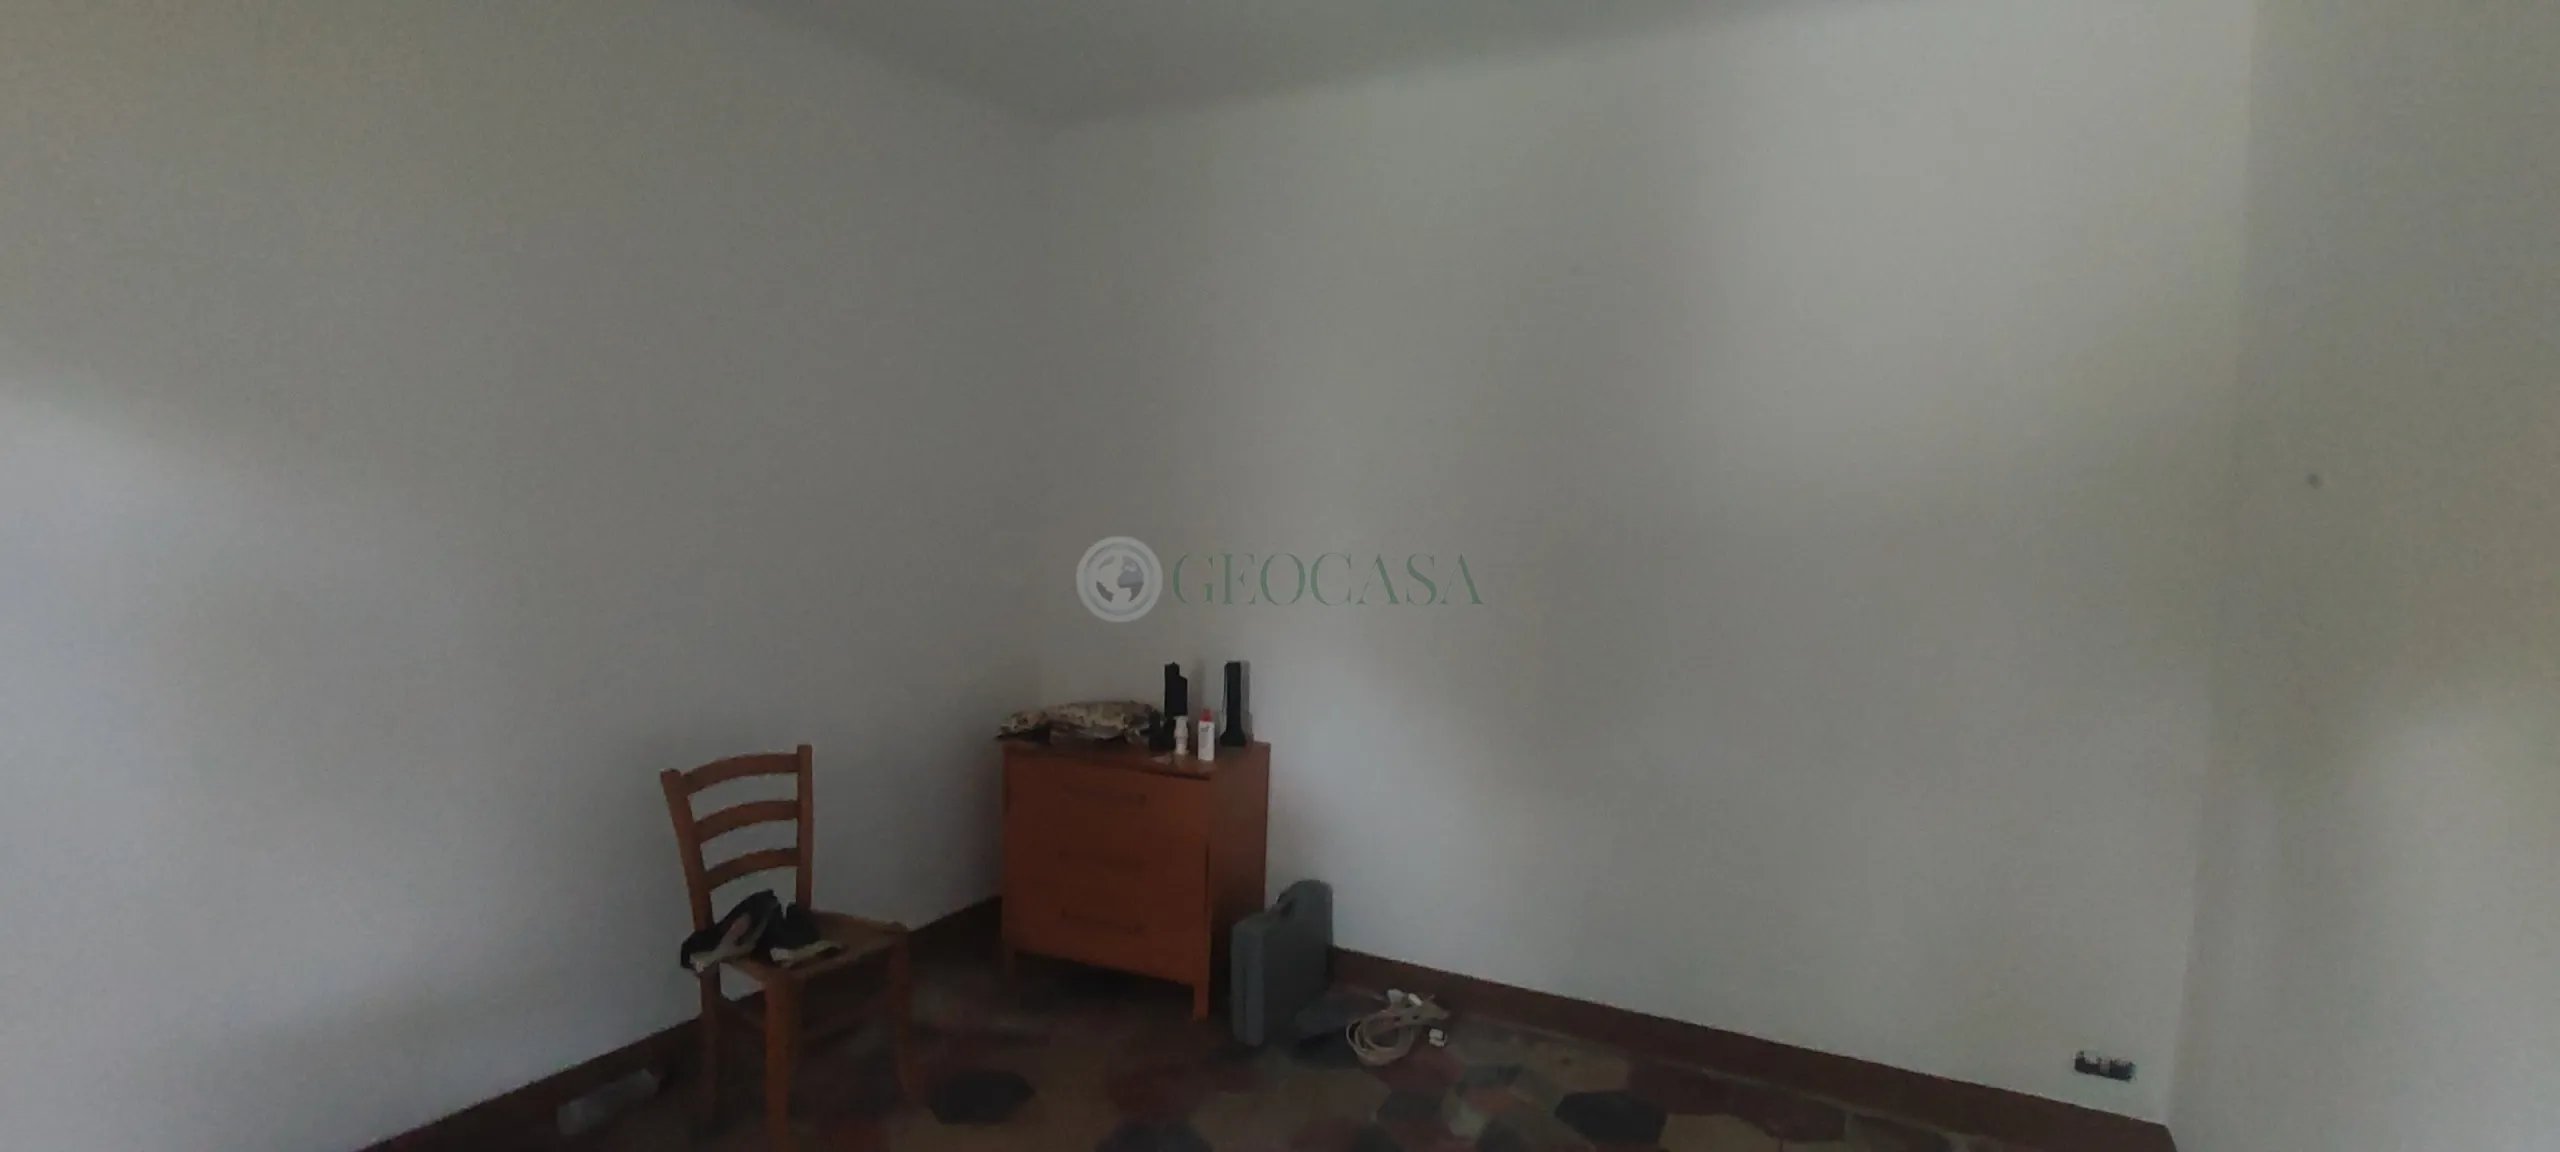 Immagine per casa semindipendente in vendita a Sarzana via Bertoloni 31